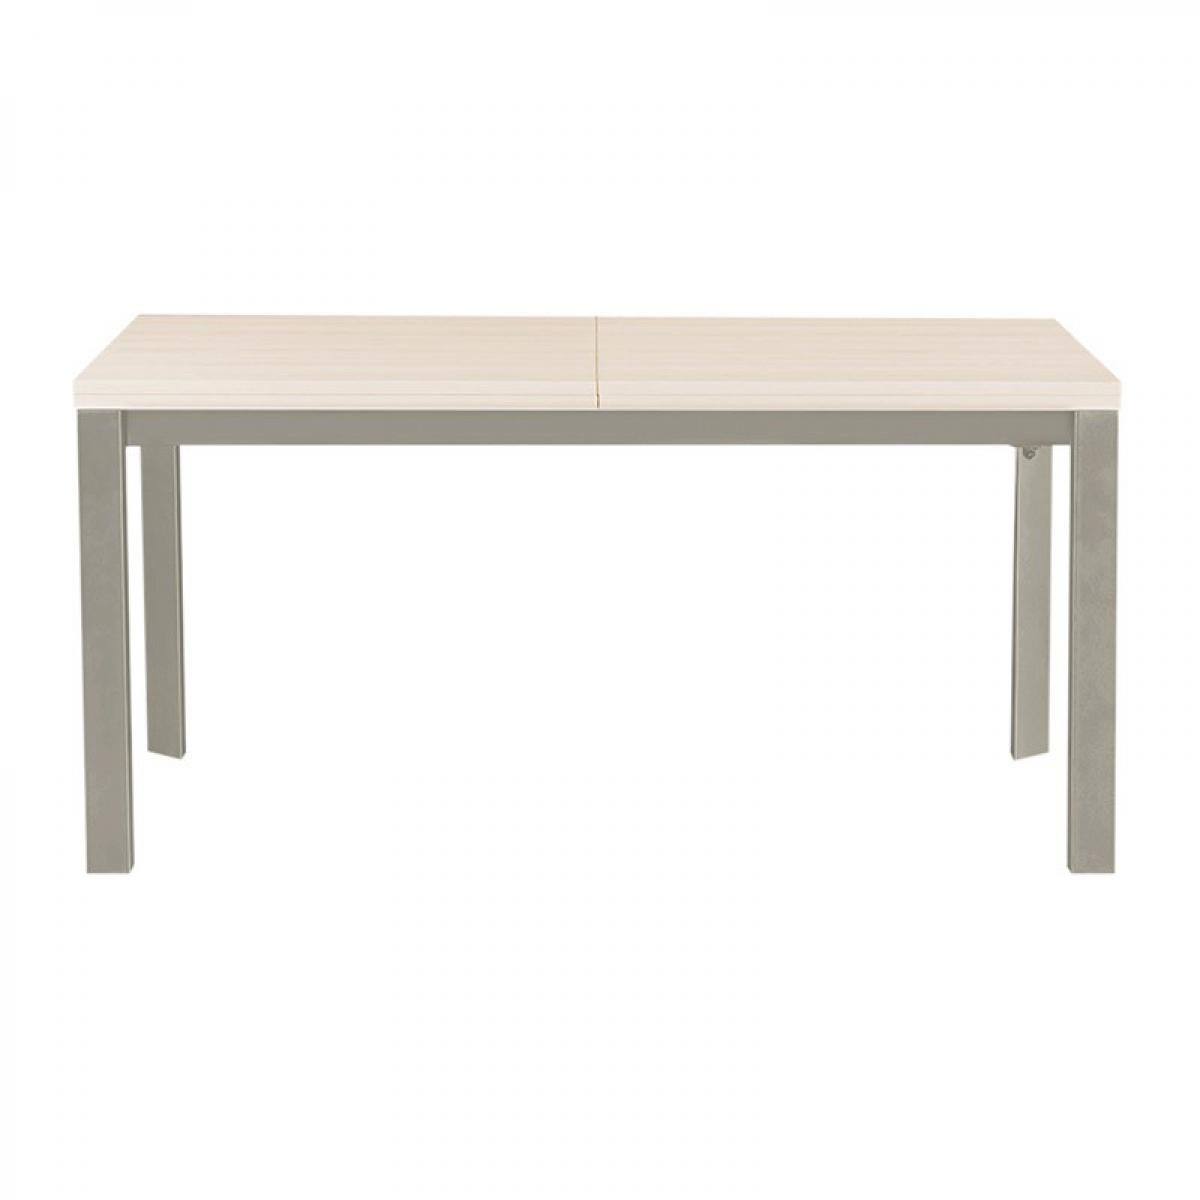 Tuoni - Table extensible en bois Pure Design VICTORY - Blanc cendré - Tables à manger